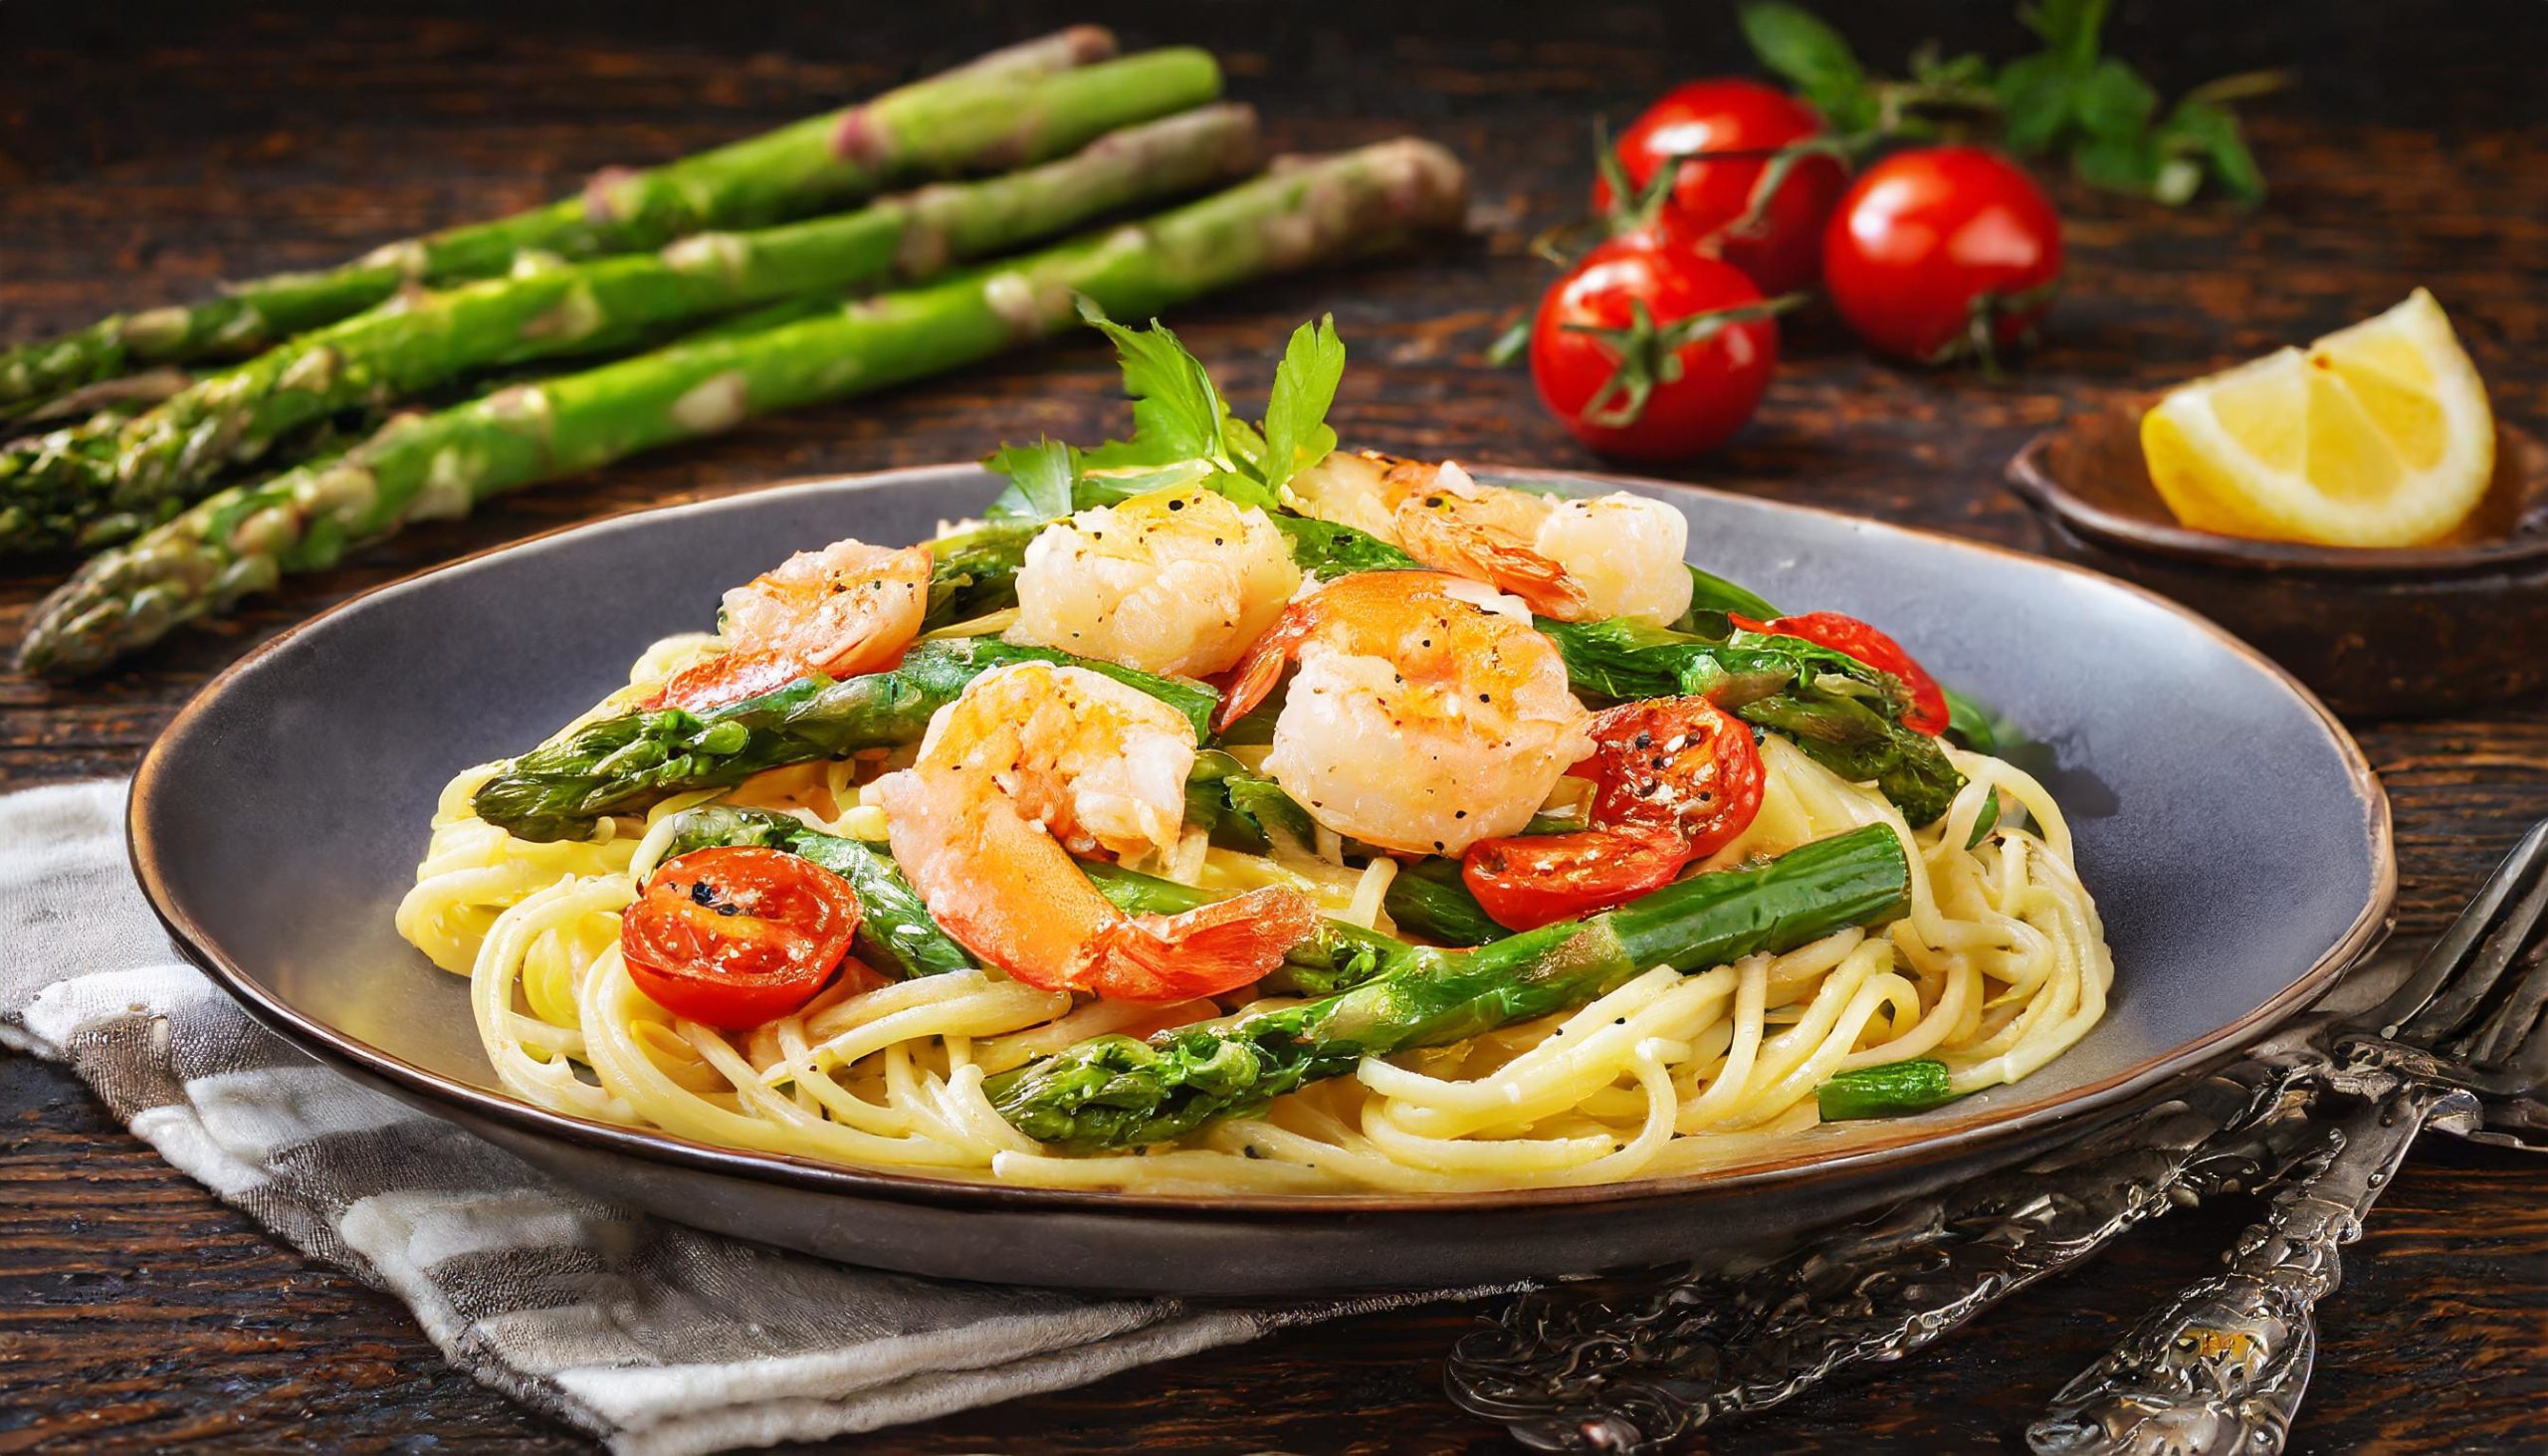 Shrimp and asparagus pasta